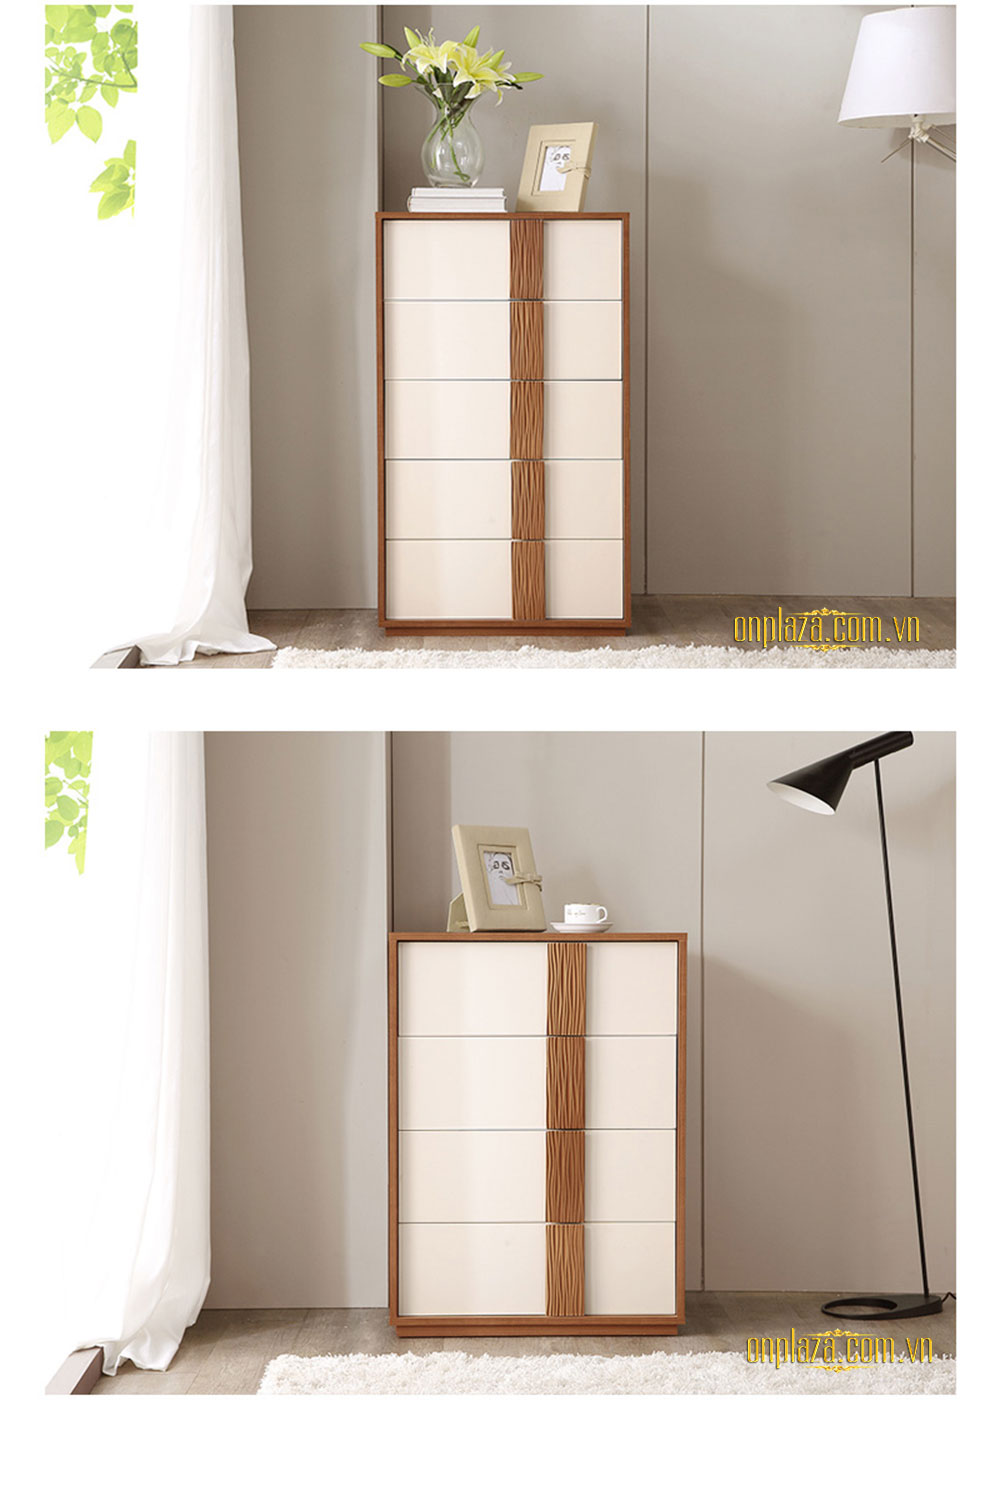 Bộ tủ ngăn kéo gỗ đựng đồ cao cấp cho không gian nội thất hiện đại TU02